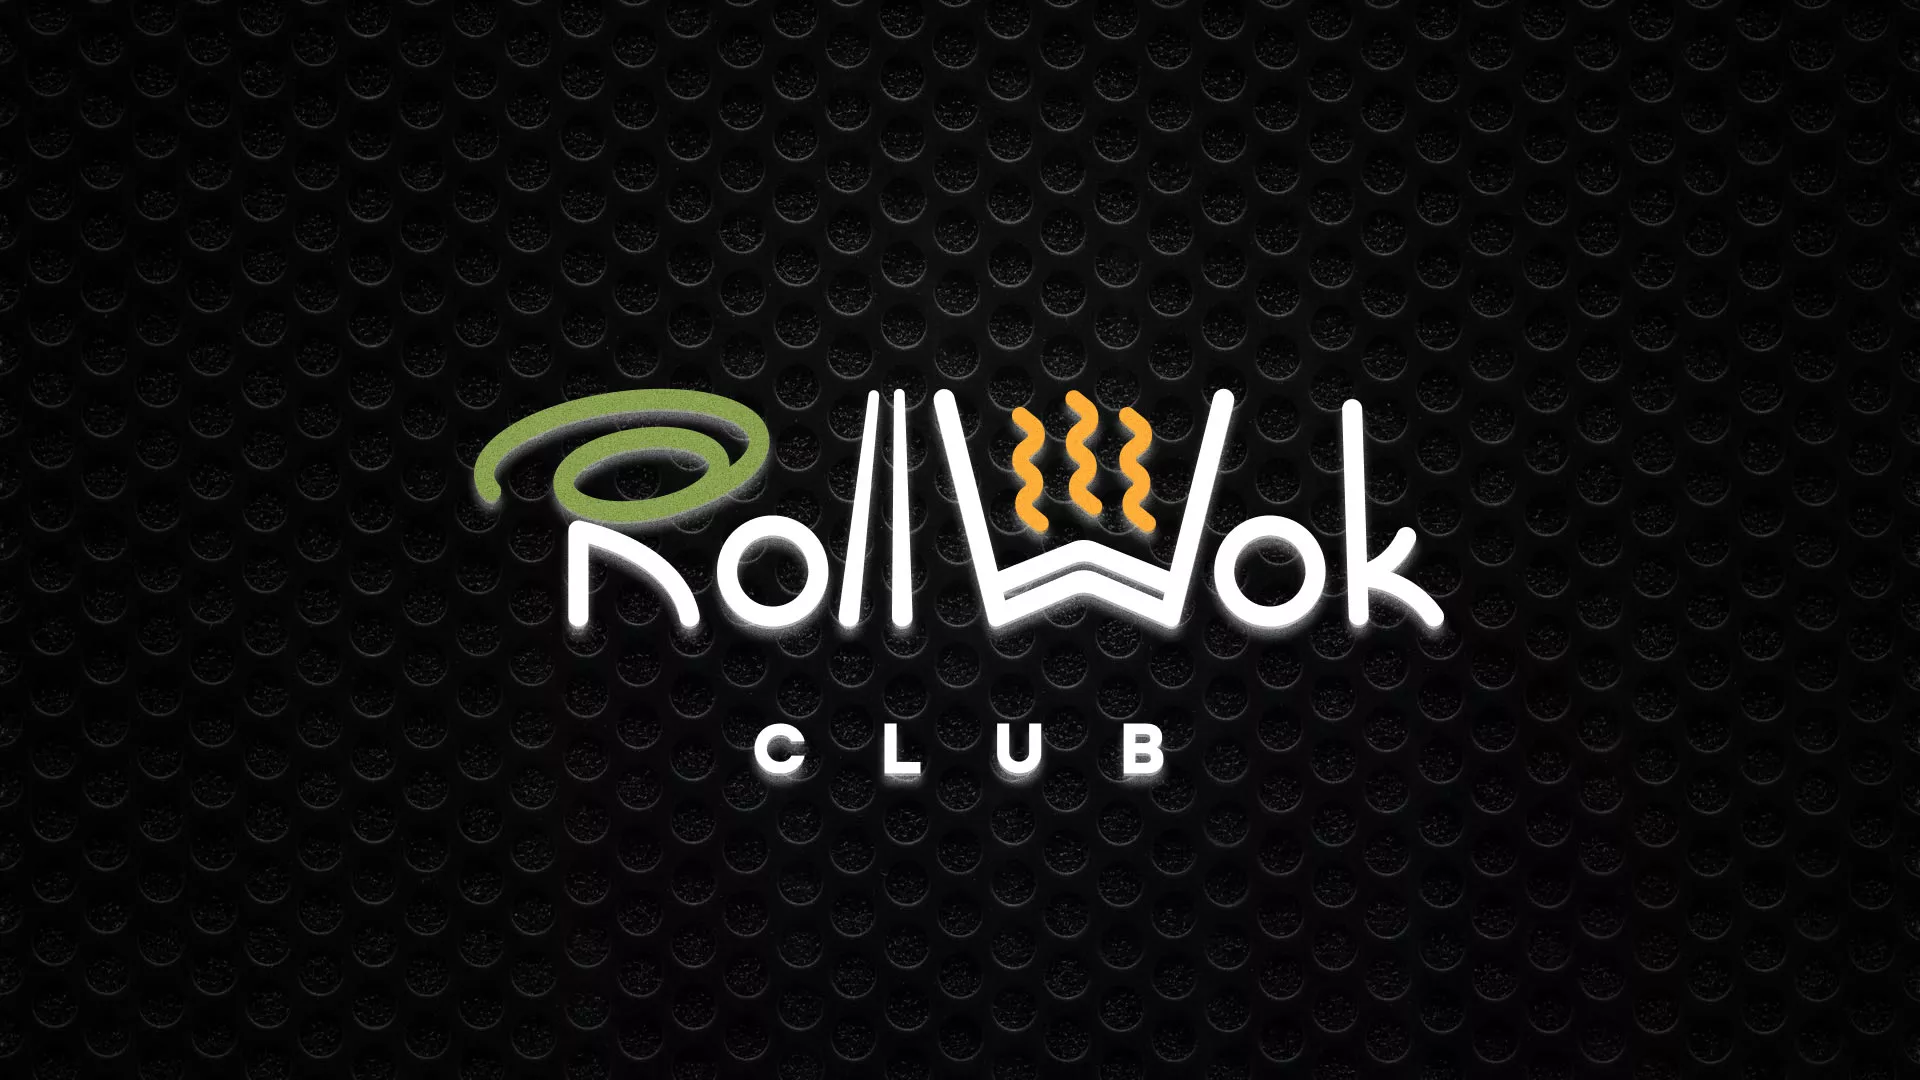 Брендирование торговых точек суши-бара «Roll Wok Club» в Городищах